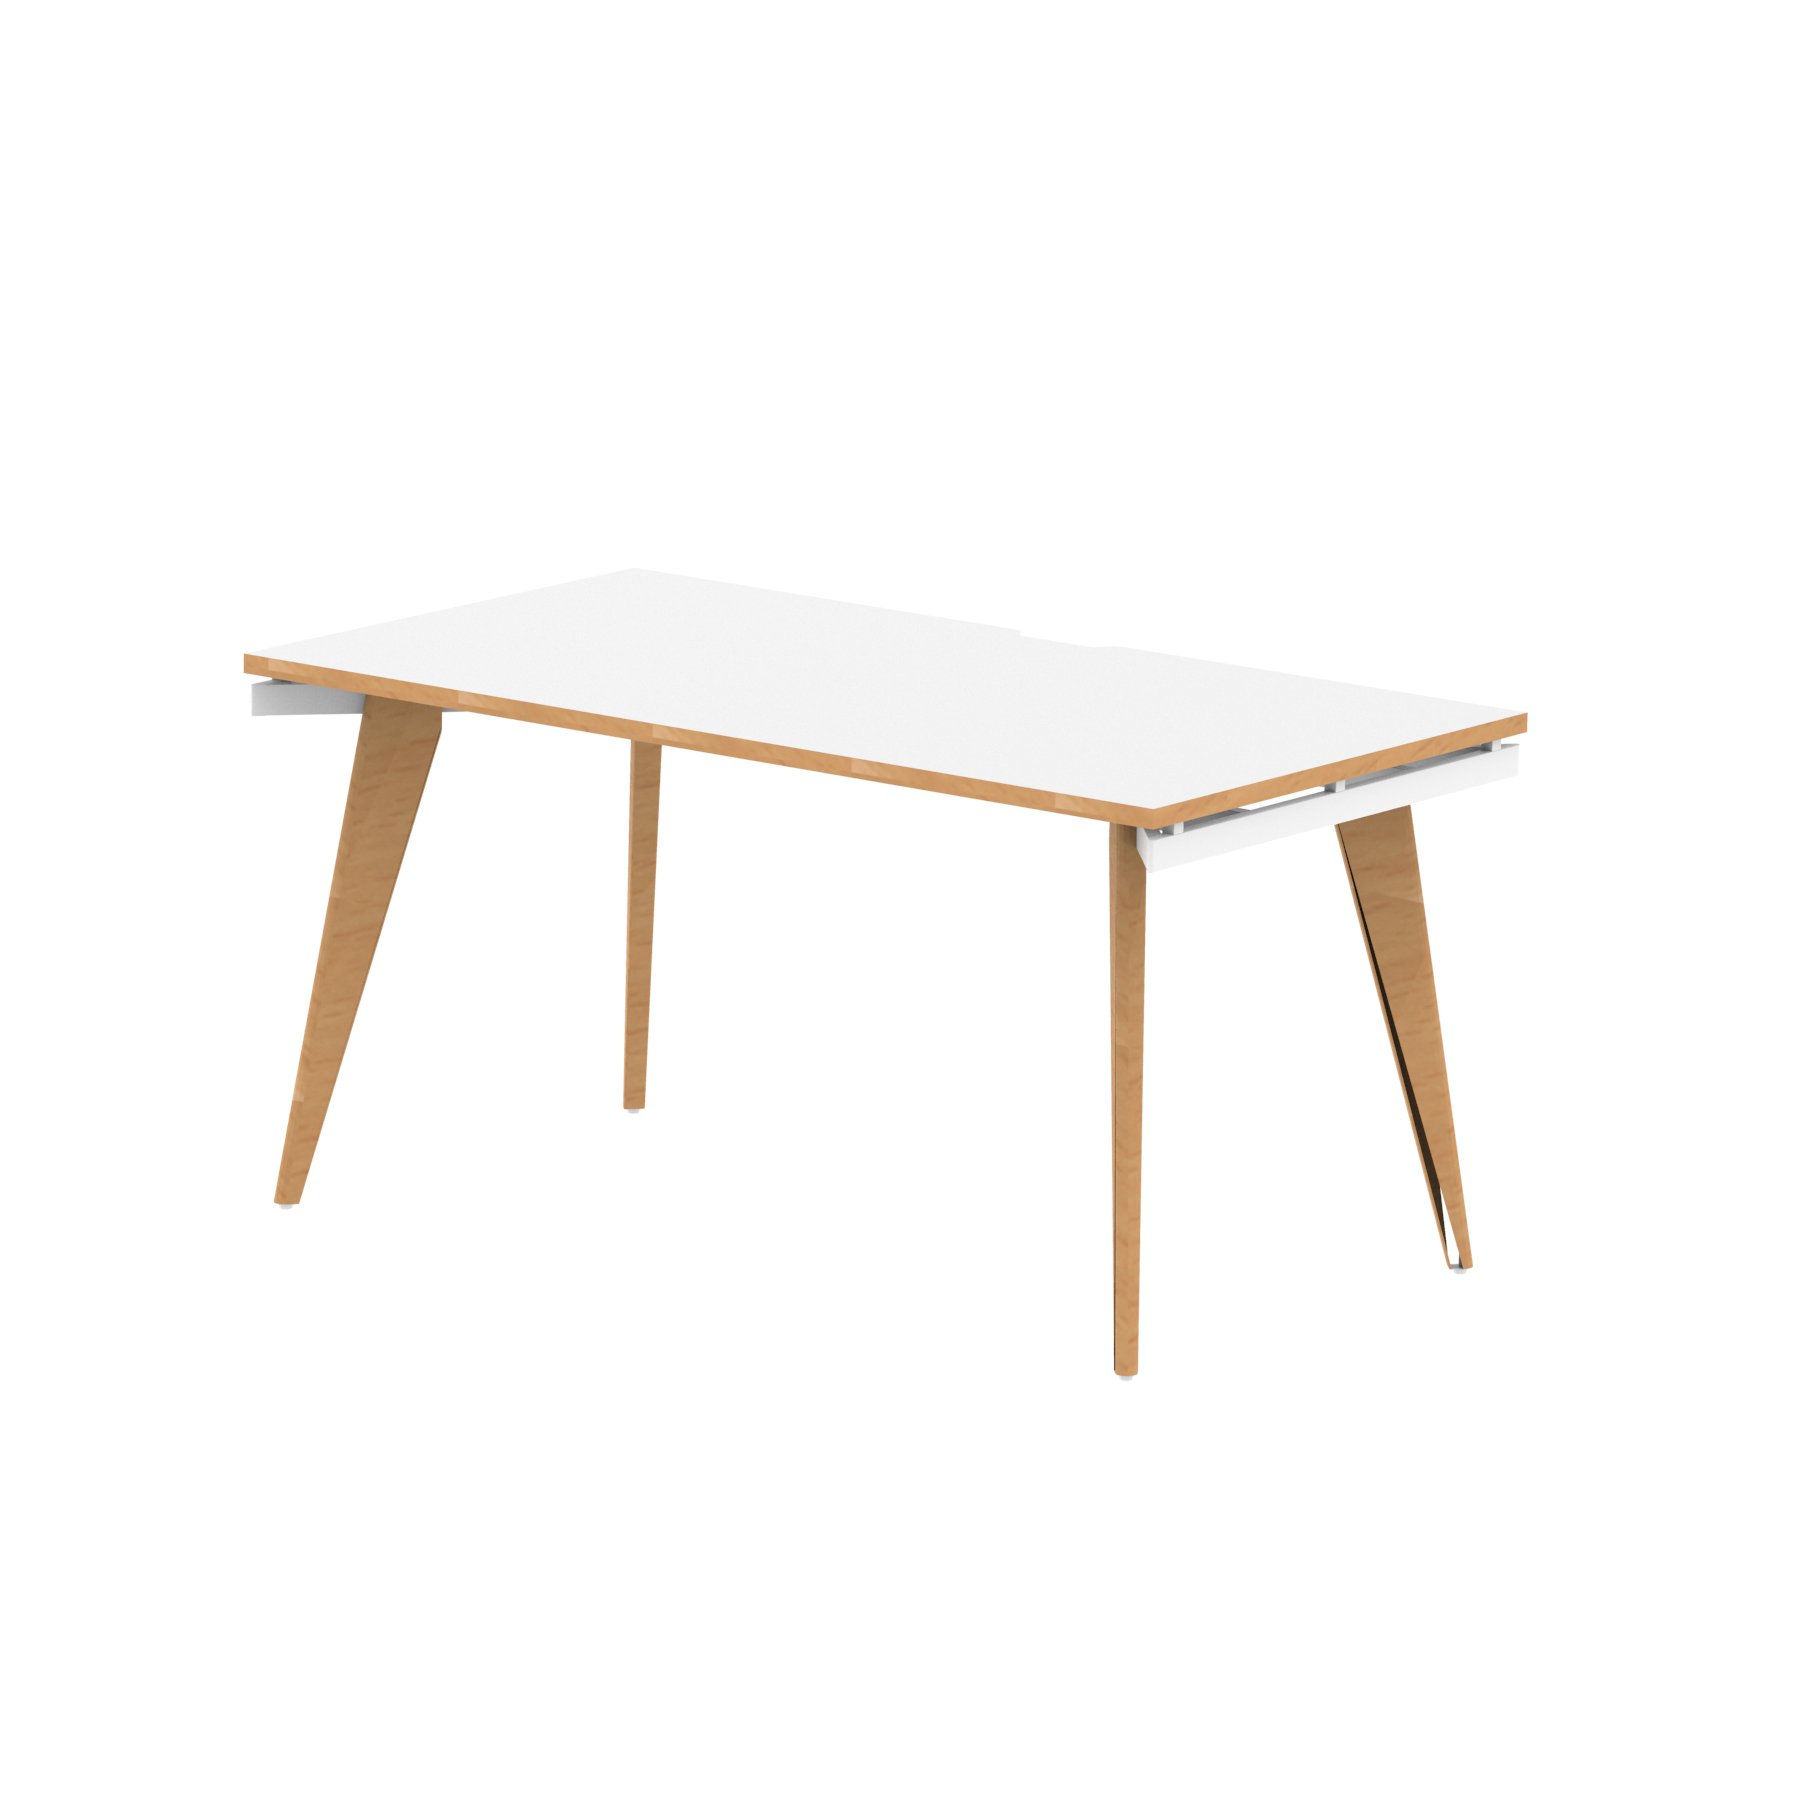 Rectangular Desks Oslo 1400mm Single Starter Desk White Top Natural Wood Edge White Frame OSL0119